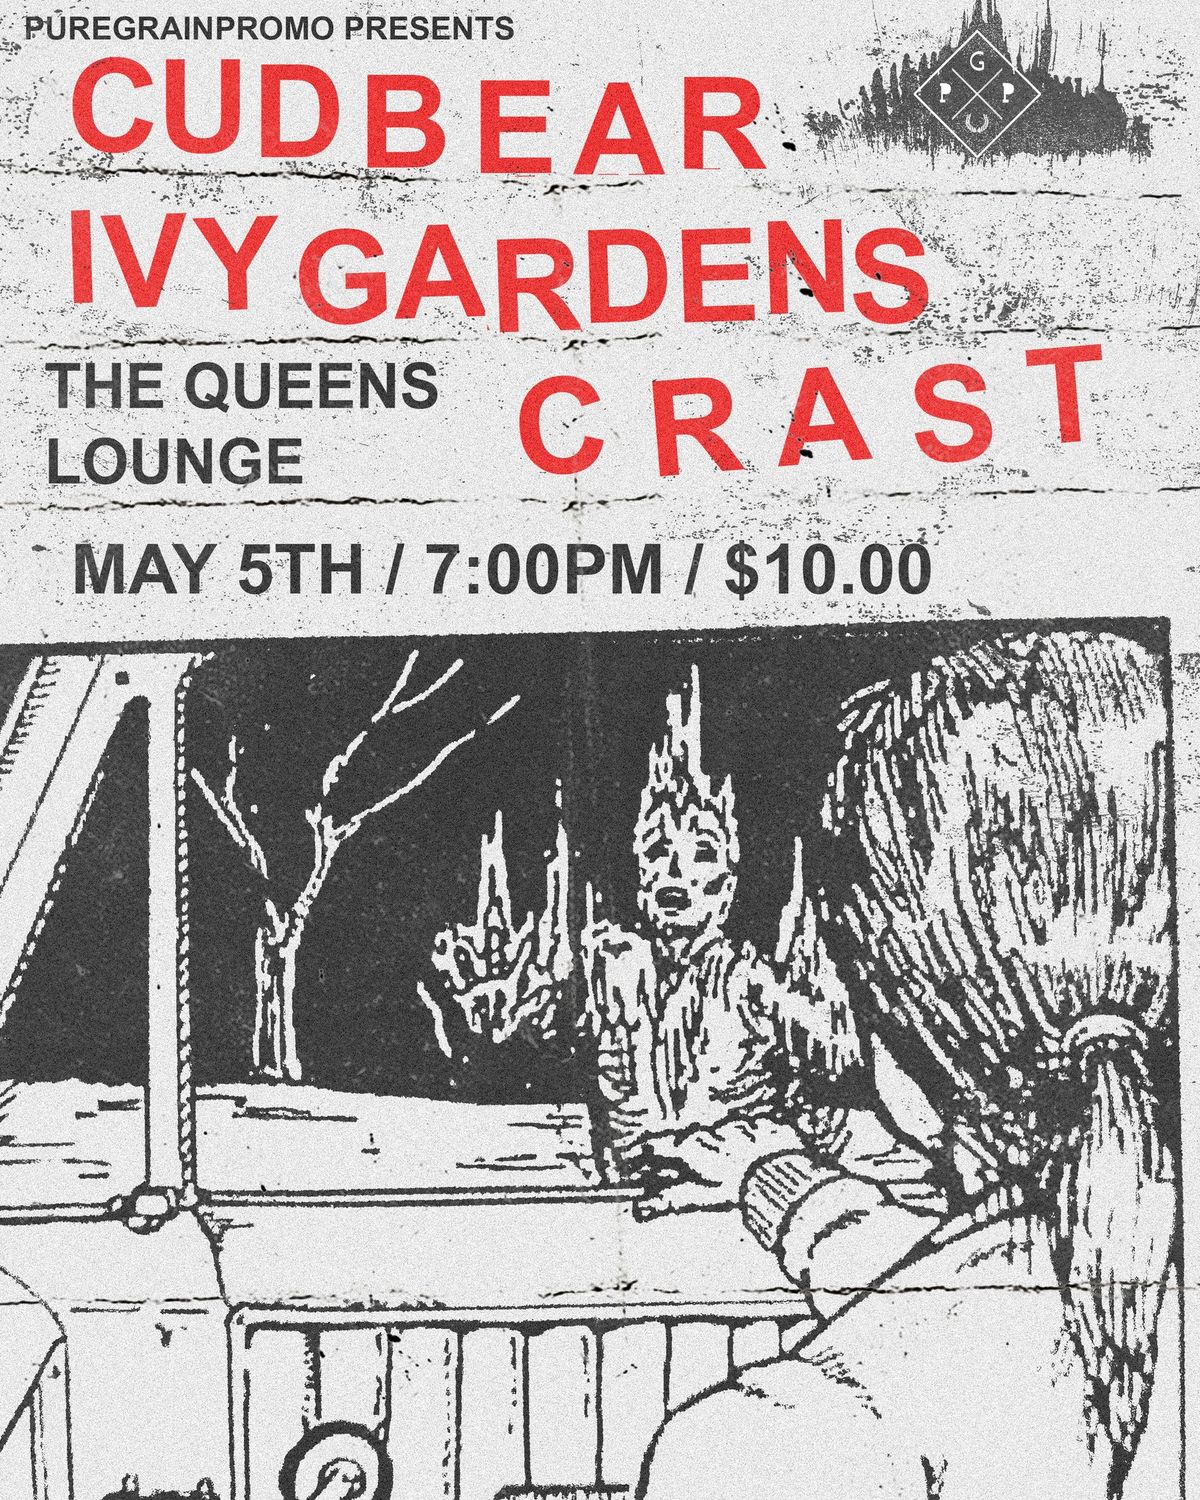 Cudbear with Ivy Gardens & Crast